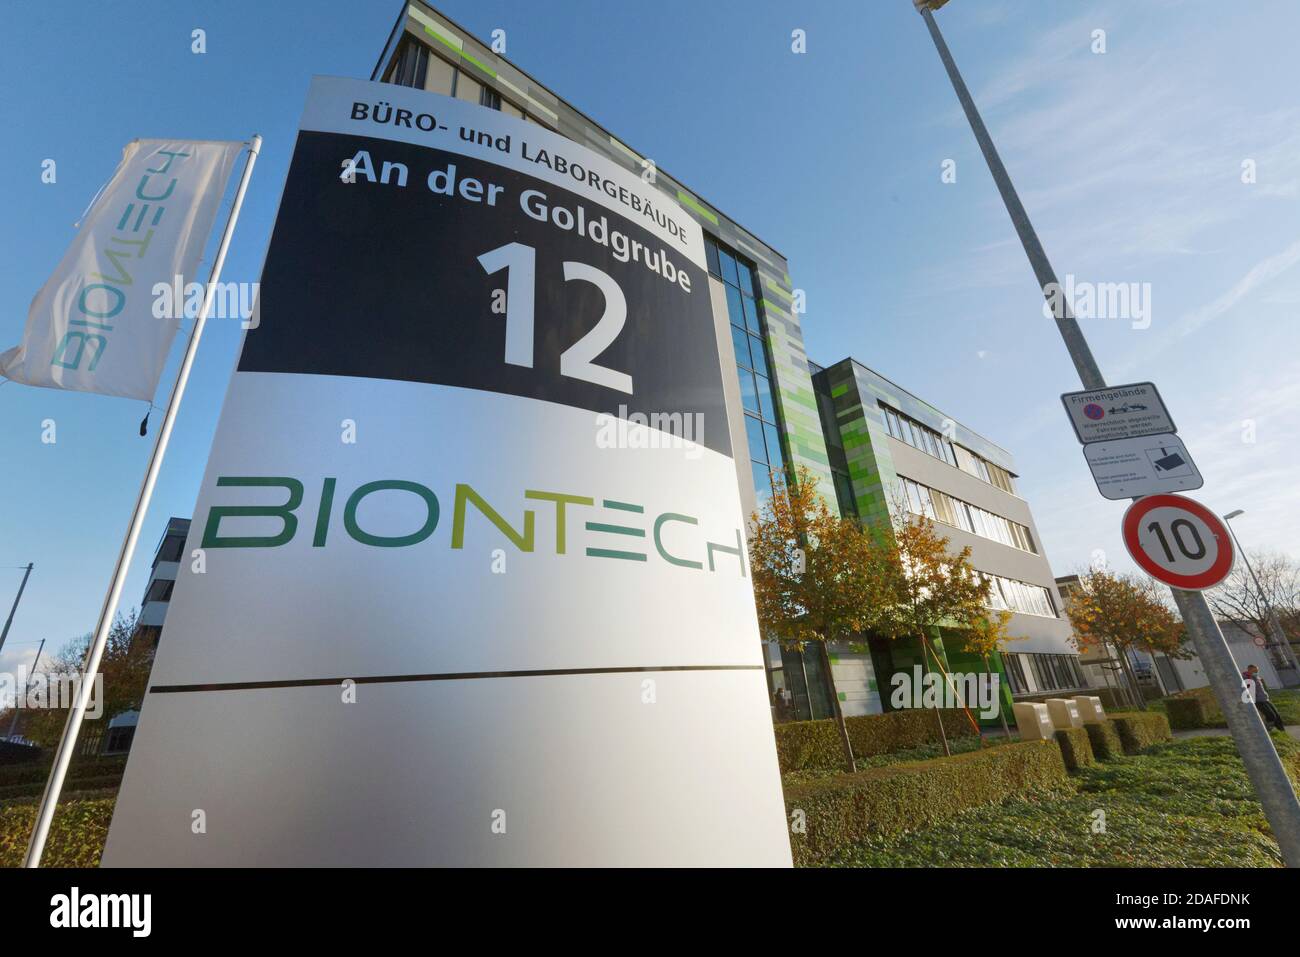 Mayence, Allemagne - 12 novembre 2020 : la société allemande de biotechnologie Biontech mène des recherches dans le domaine de la mise au point d'un vaccin contre Covid-19. Banque D'Images